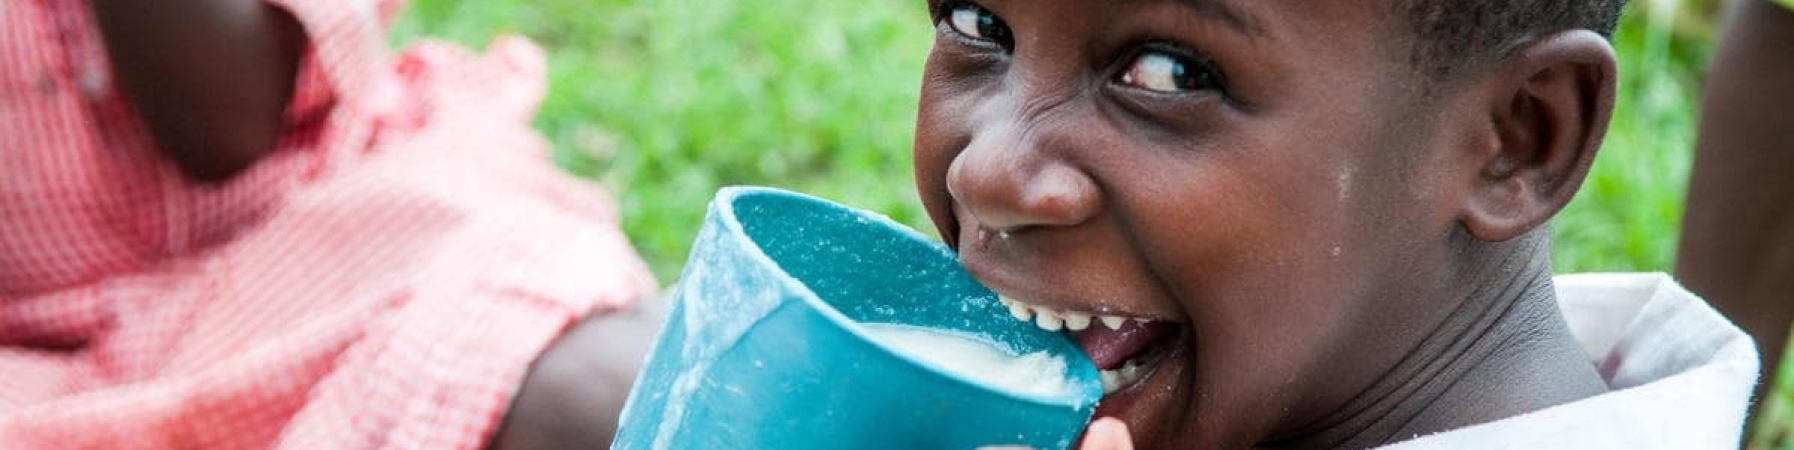 bambina che ride mentre beve da un bicchiere azzurro il latte donato tramite le donazioni 